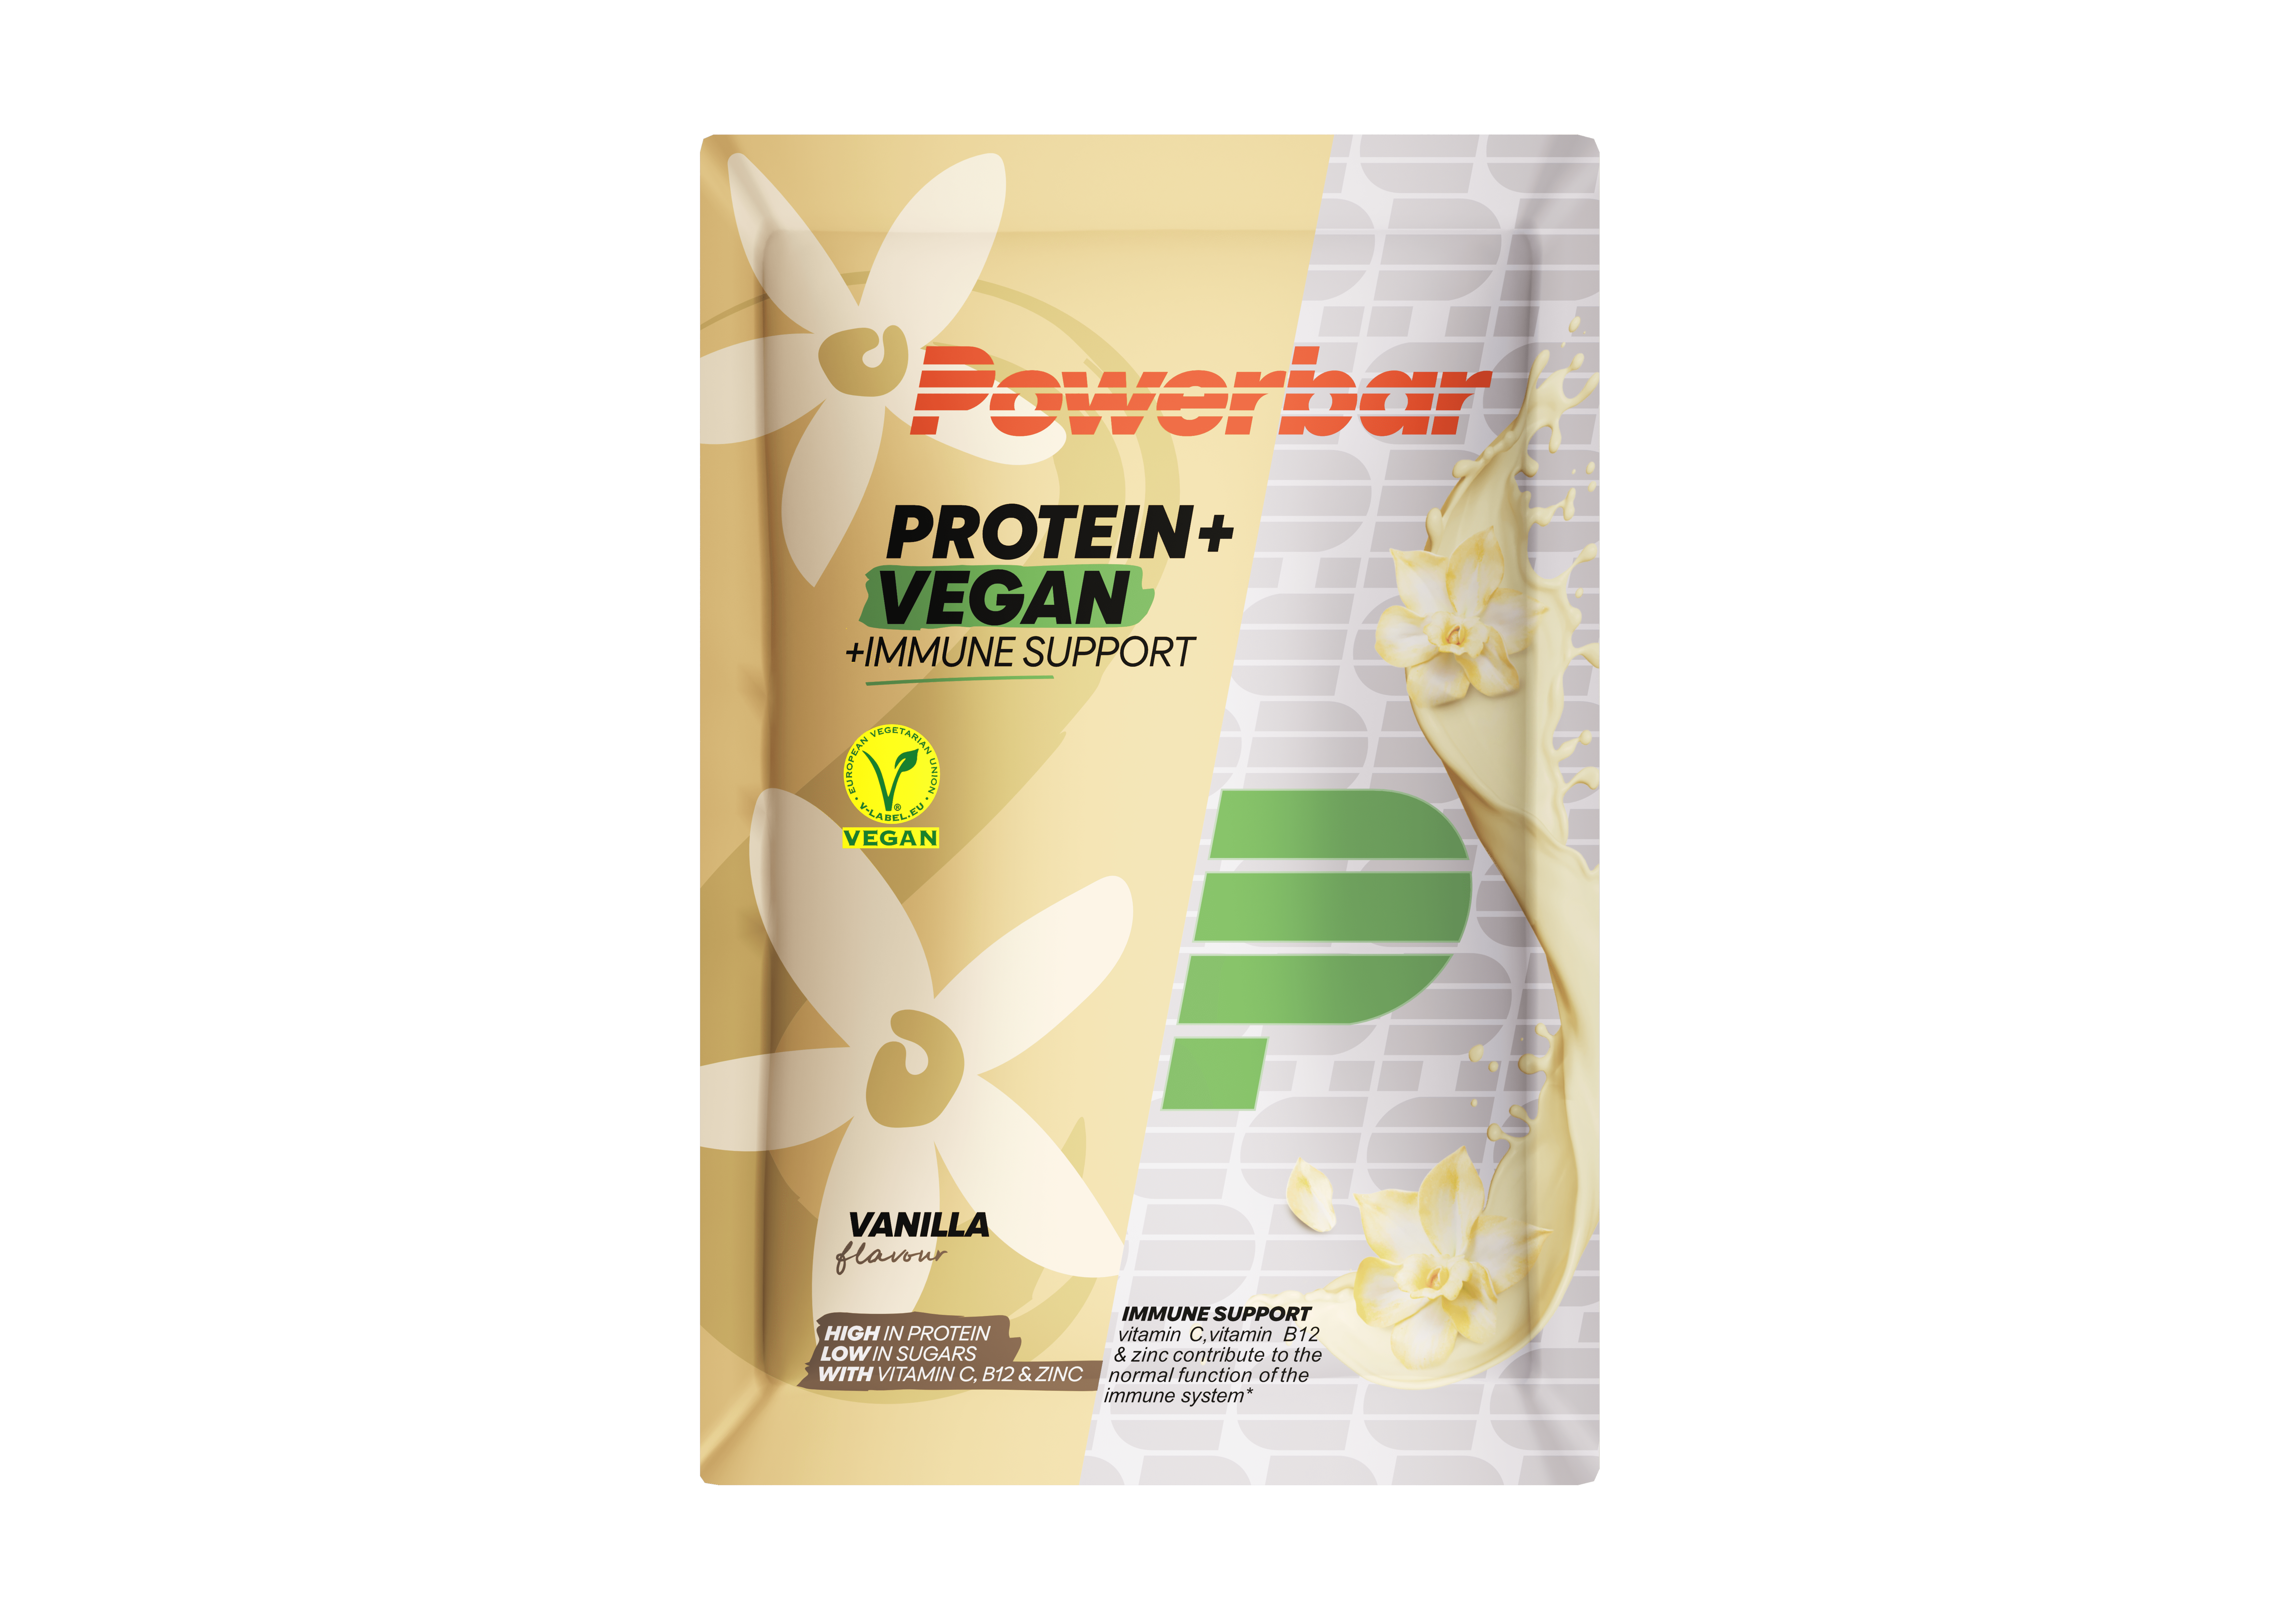 Protein+ Vegan Immune Support Powder